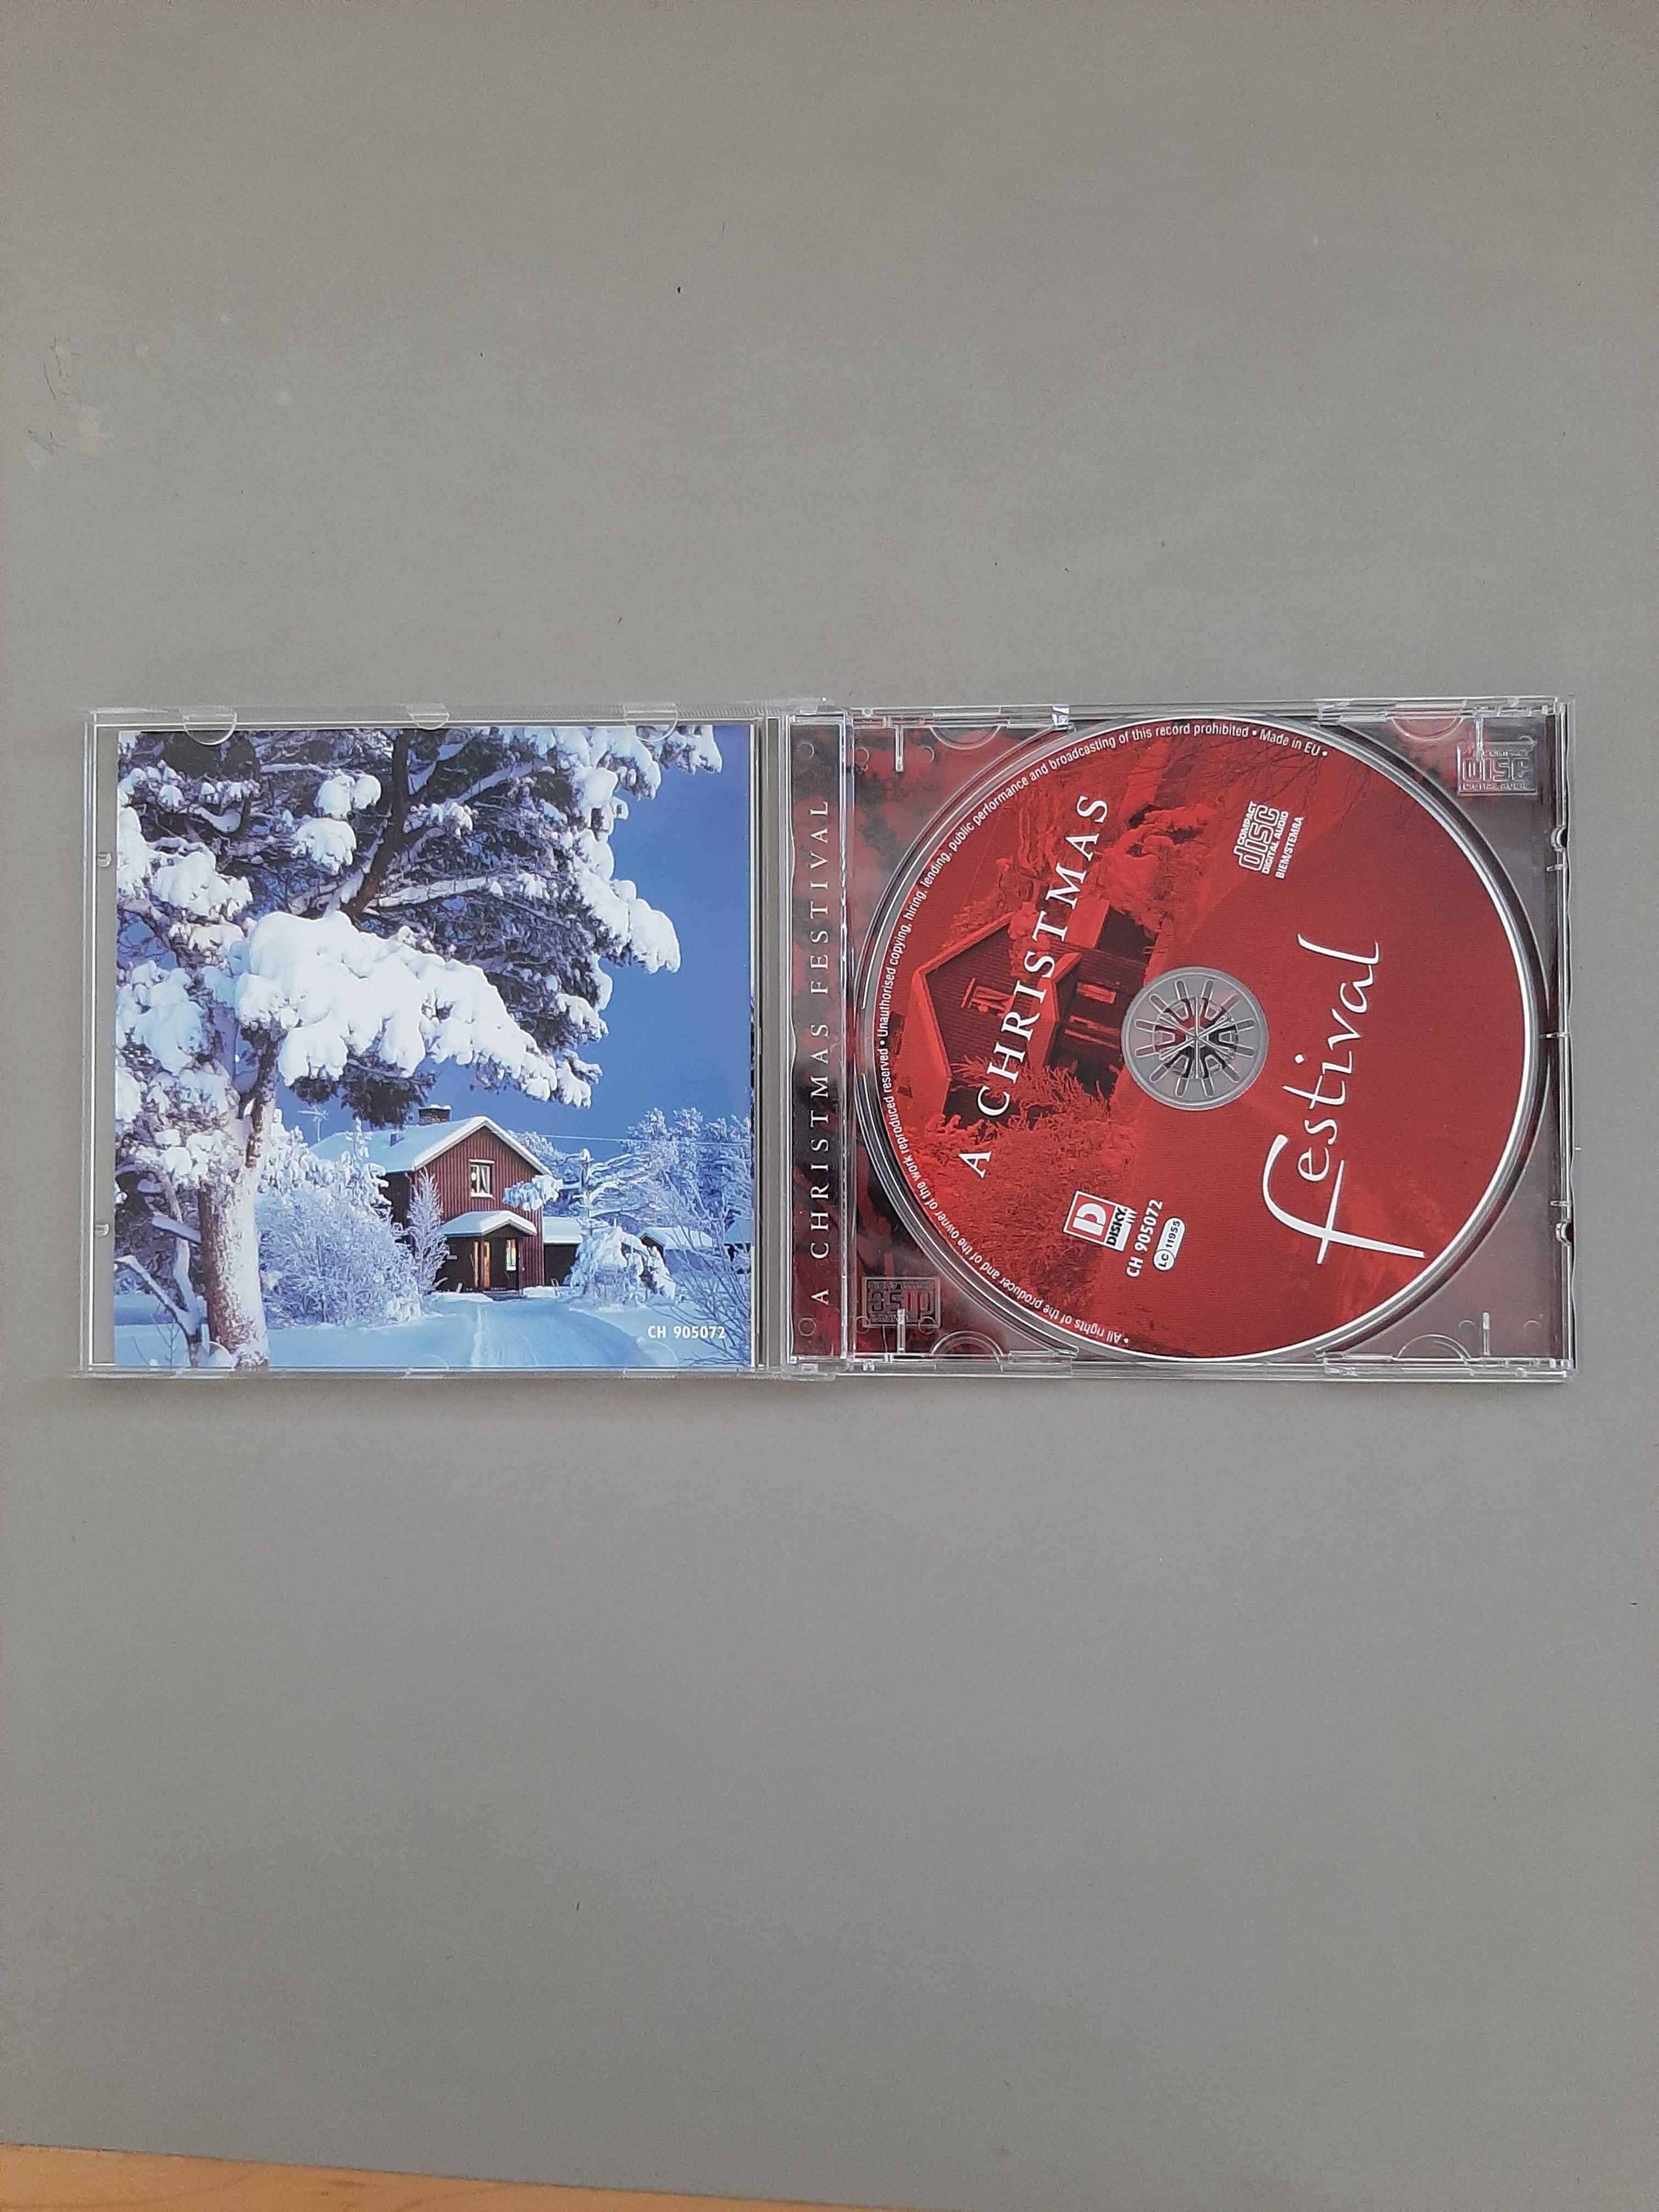 CD de músicas de Natal